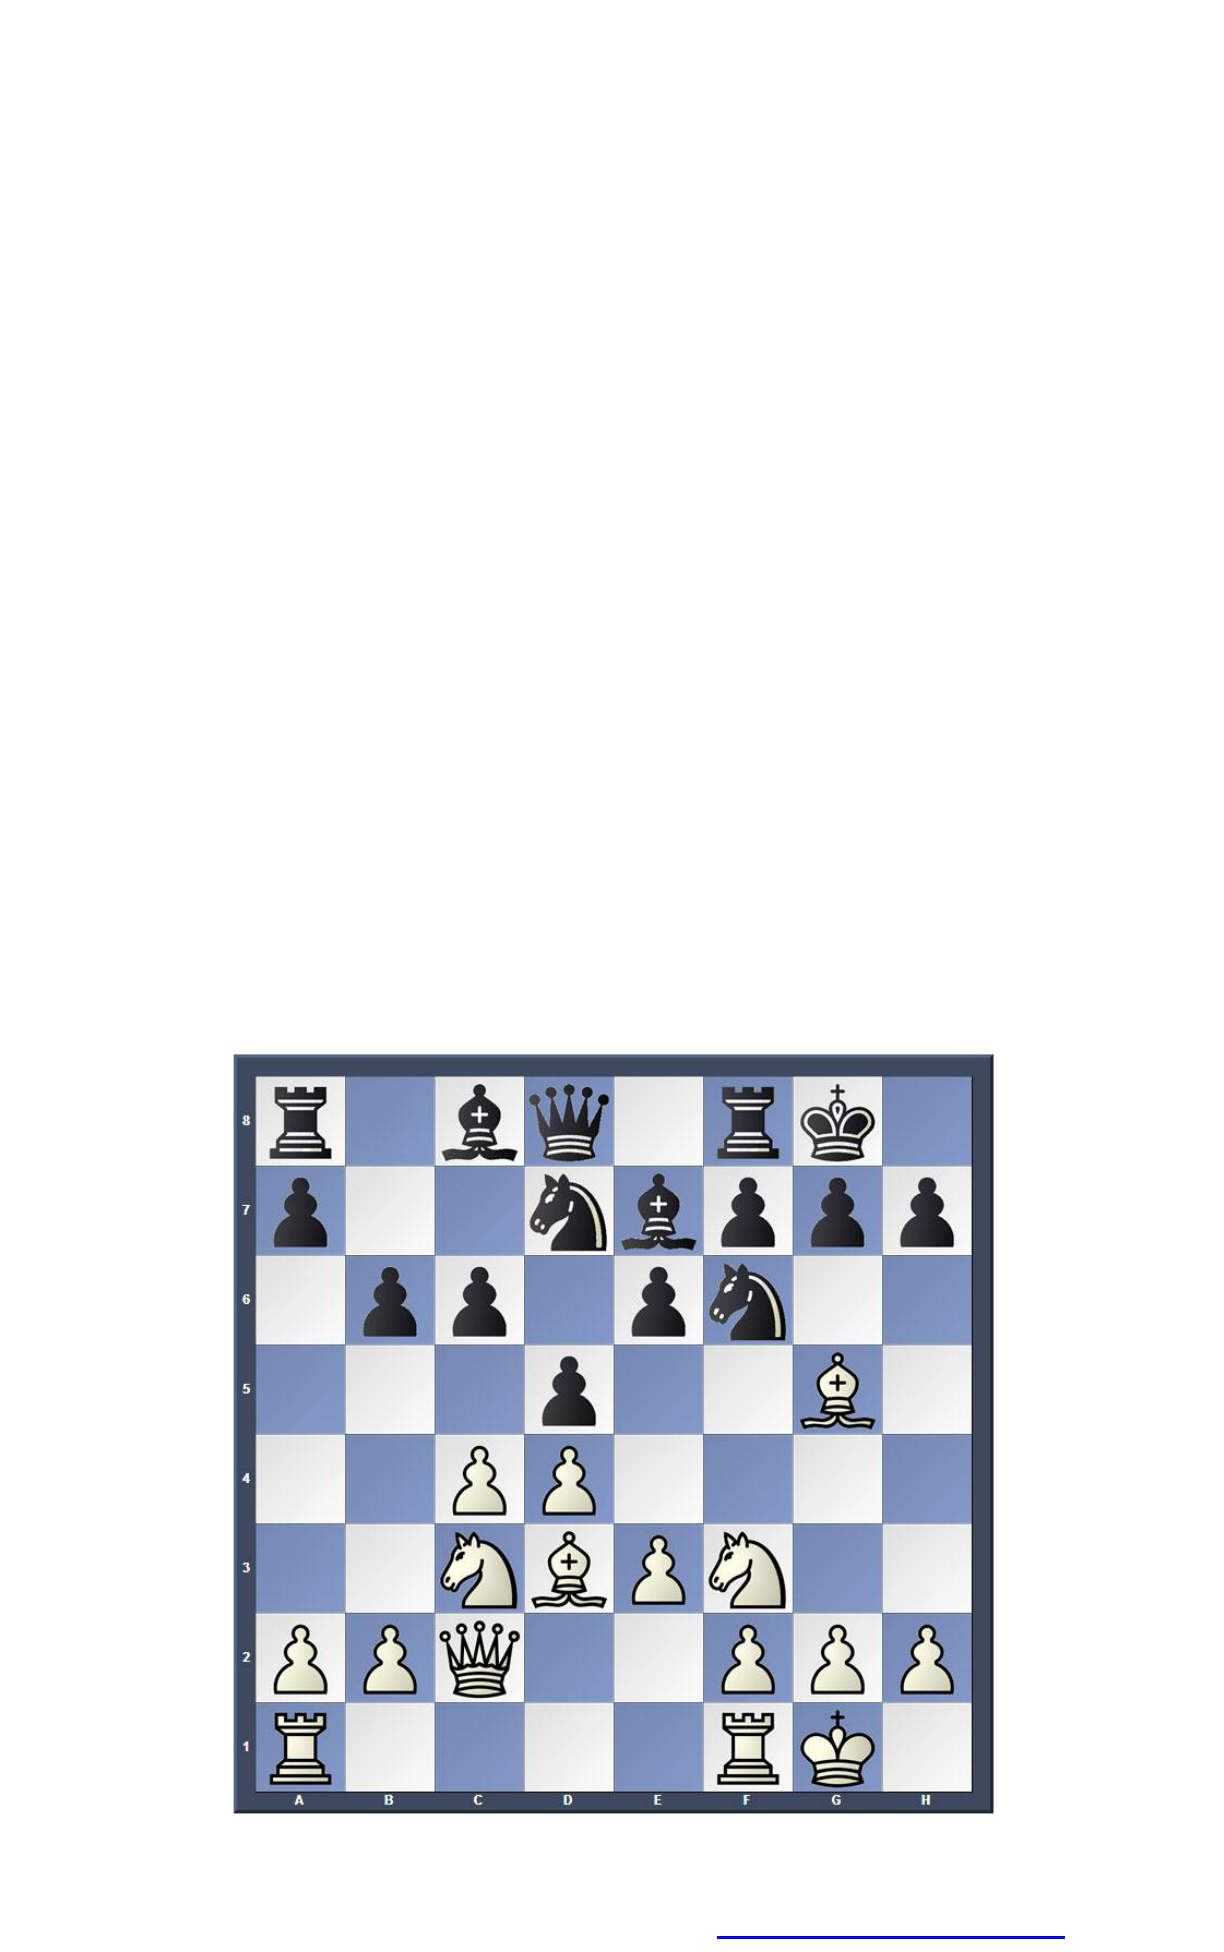 A maioria dos iniciantes comete esse ERRO nas aberturas de xadrez